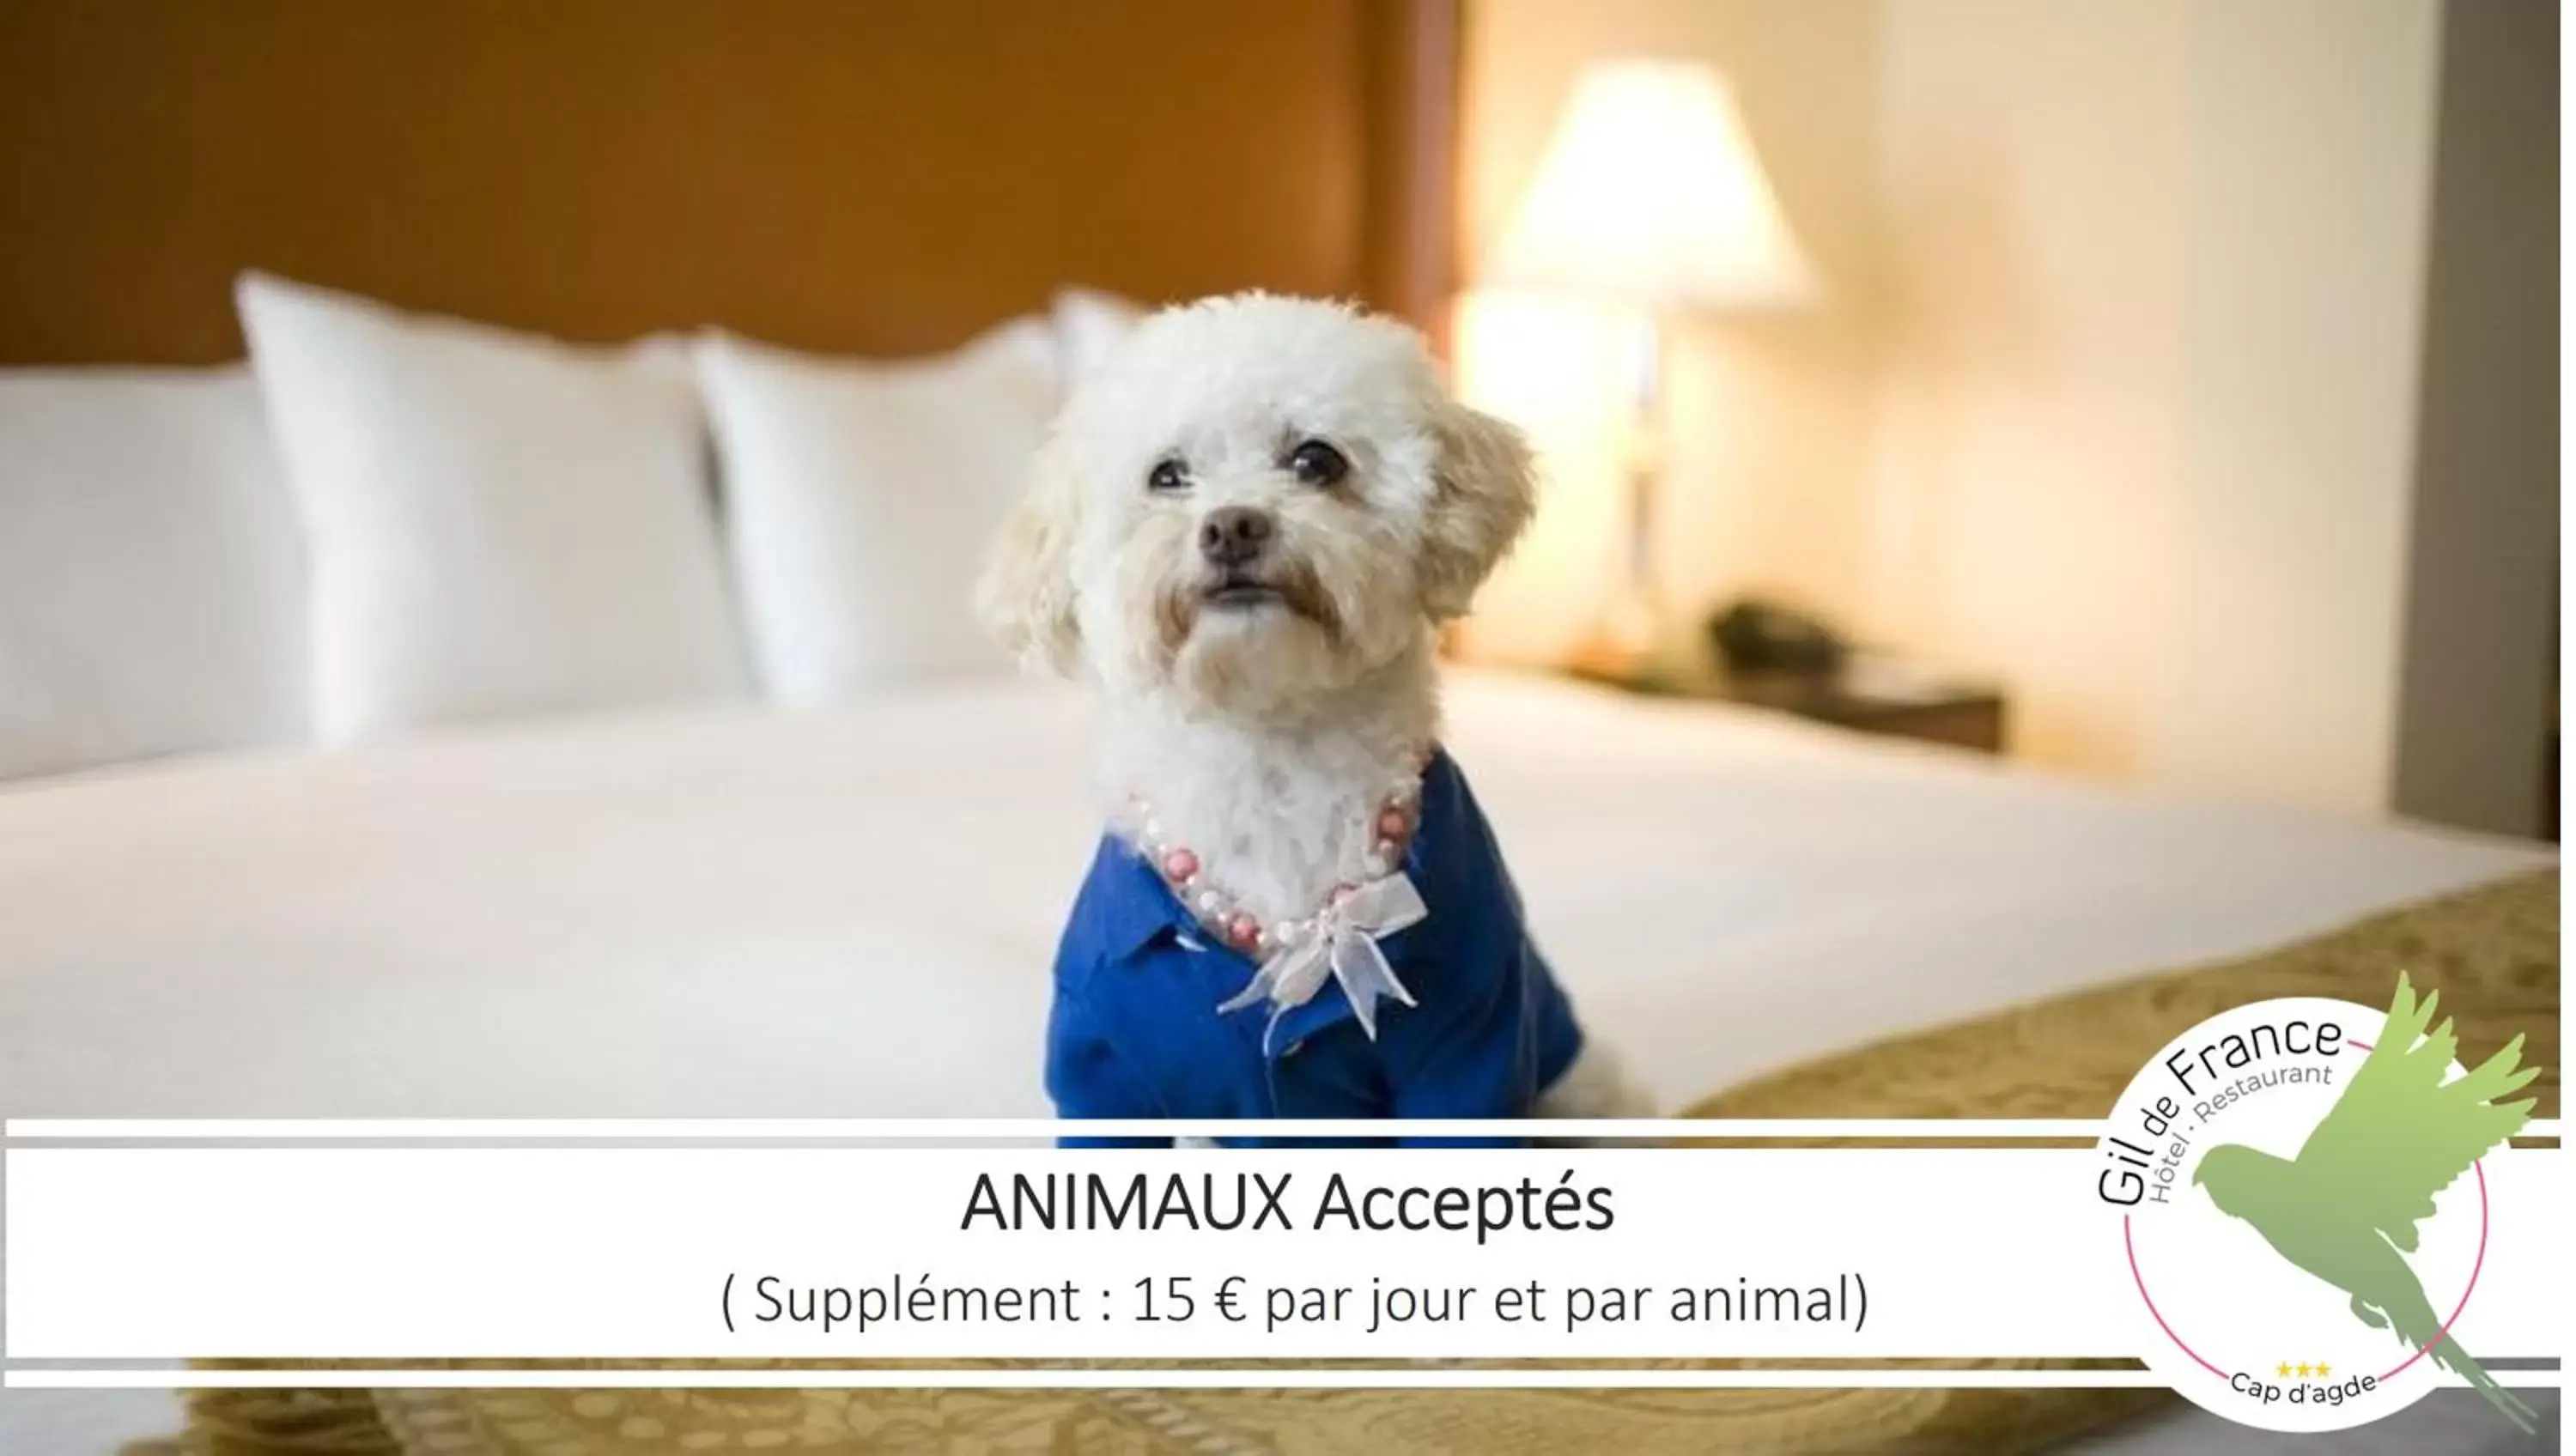 Pets in Hotel & Spa Gil de France Cap d'Agde